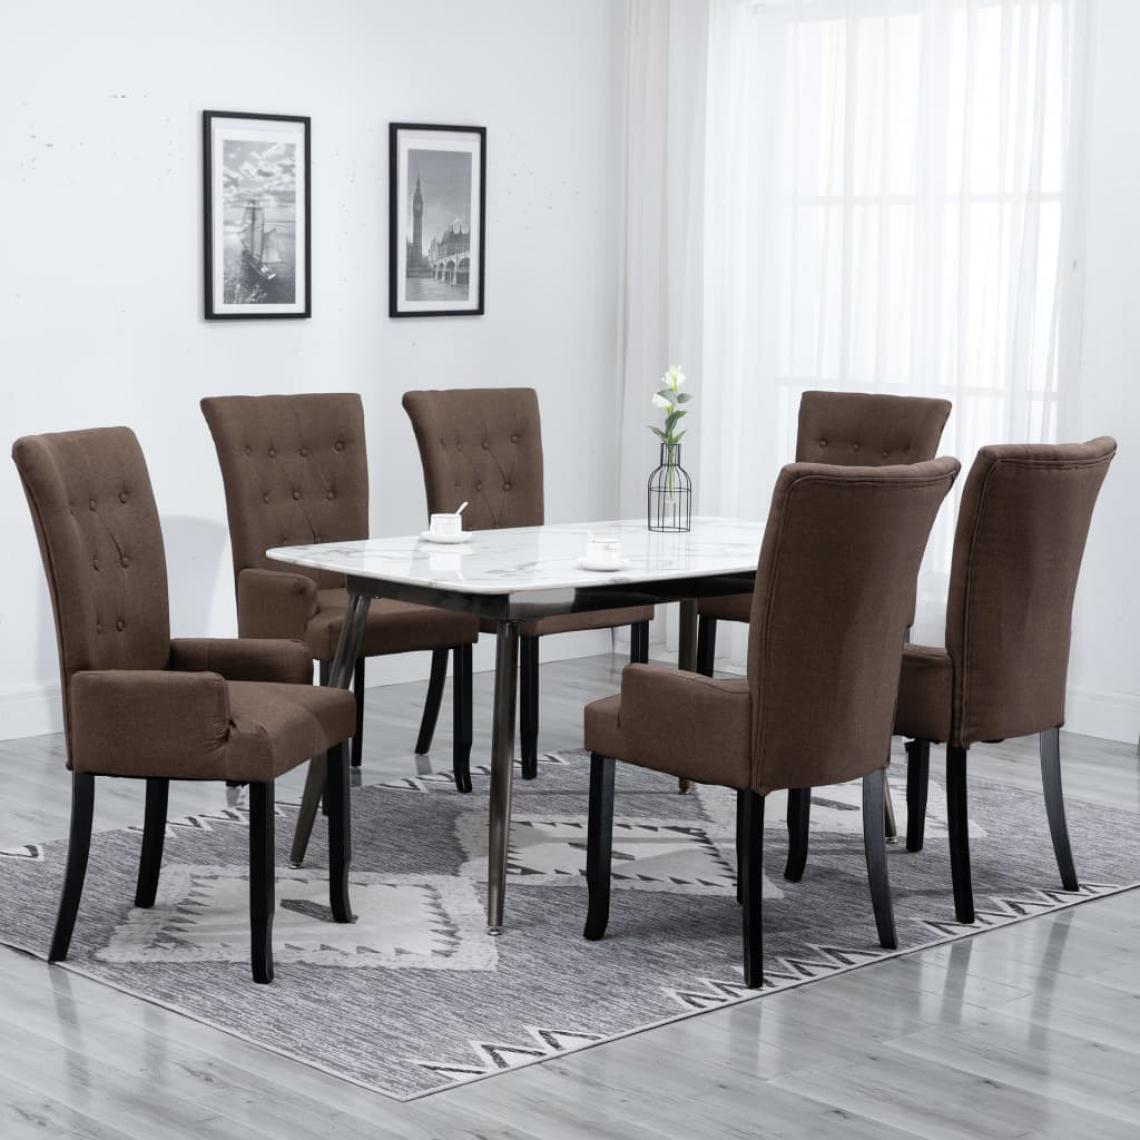 Icaverne - sublime Fauteuils et chaises collection Bakou Chaises de salle à manger avec accoudoirs 6 pcs Marron Tissu - Chaises